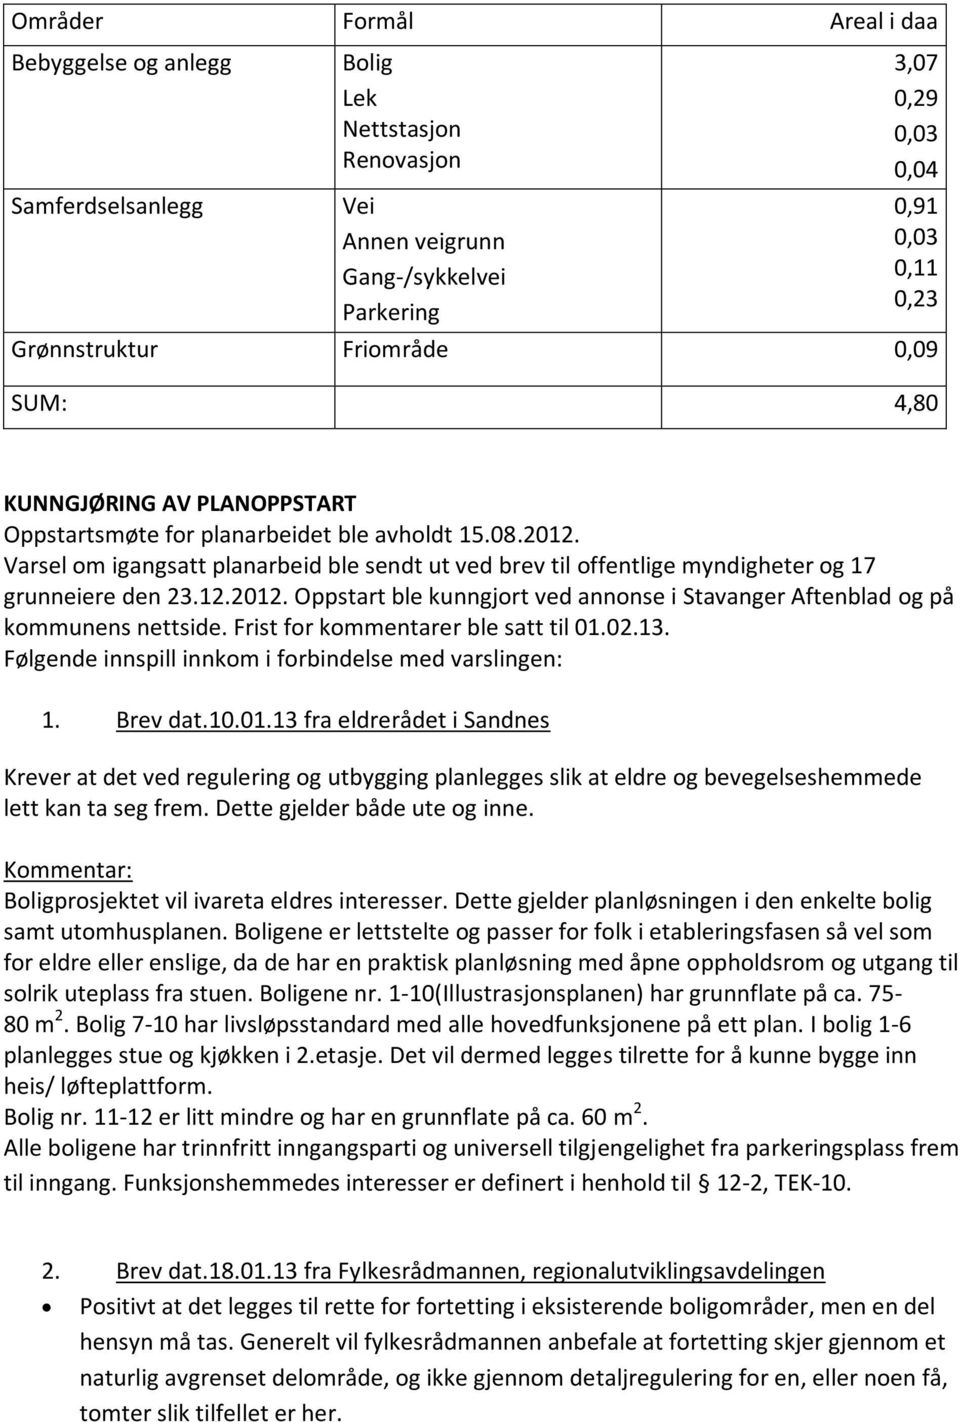 Varsel om igangsatt planarbeid ble sendt ut ved brev til offentlige myndigheter og 17 grunneiere den 23.12.2012. Oppstart ble kunngjort ved annonse i Stavanger Aftenblad og på kommunens nettside.